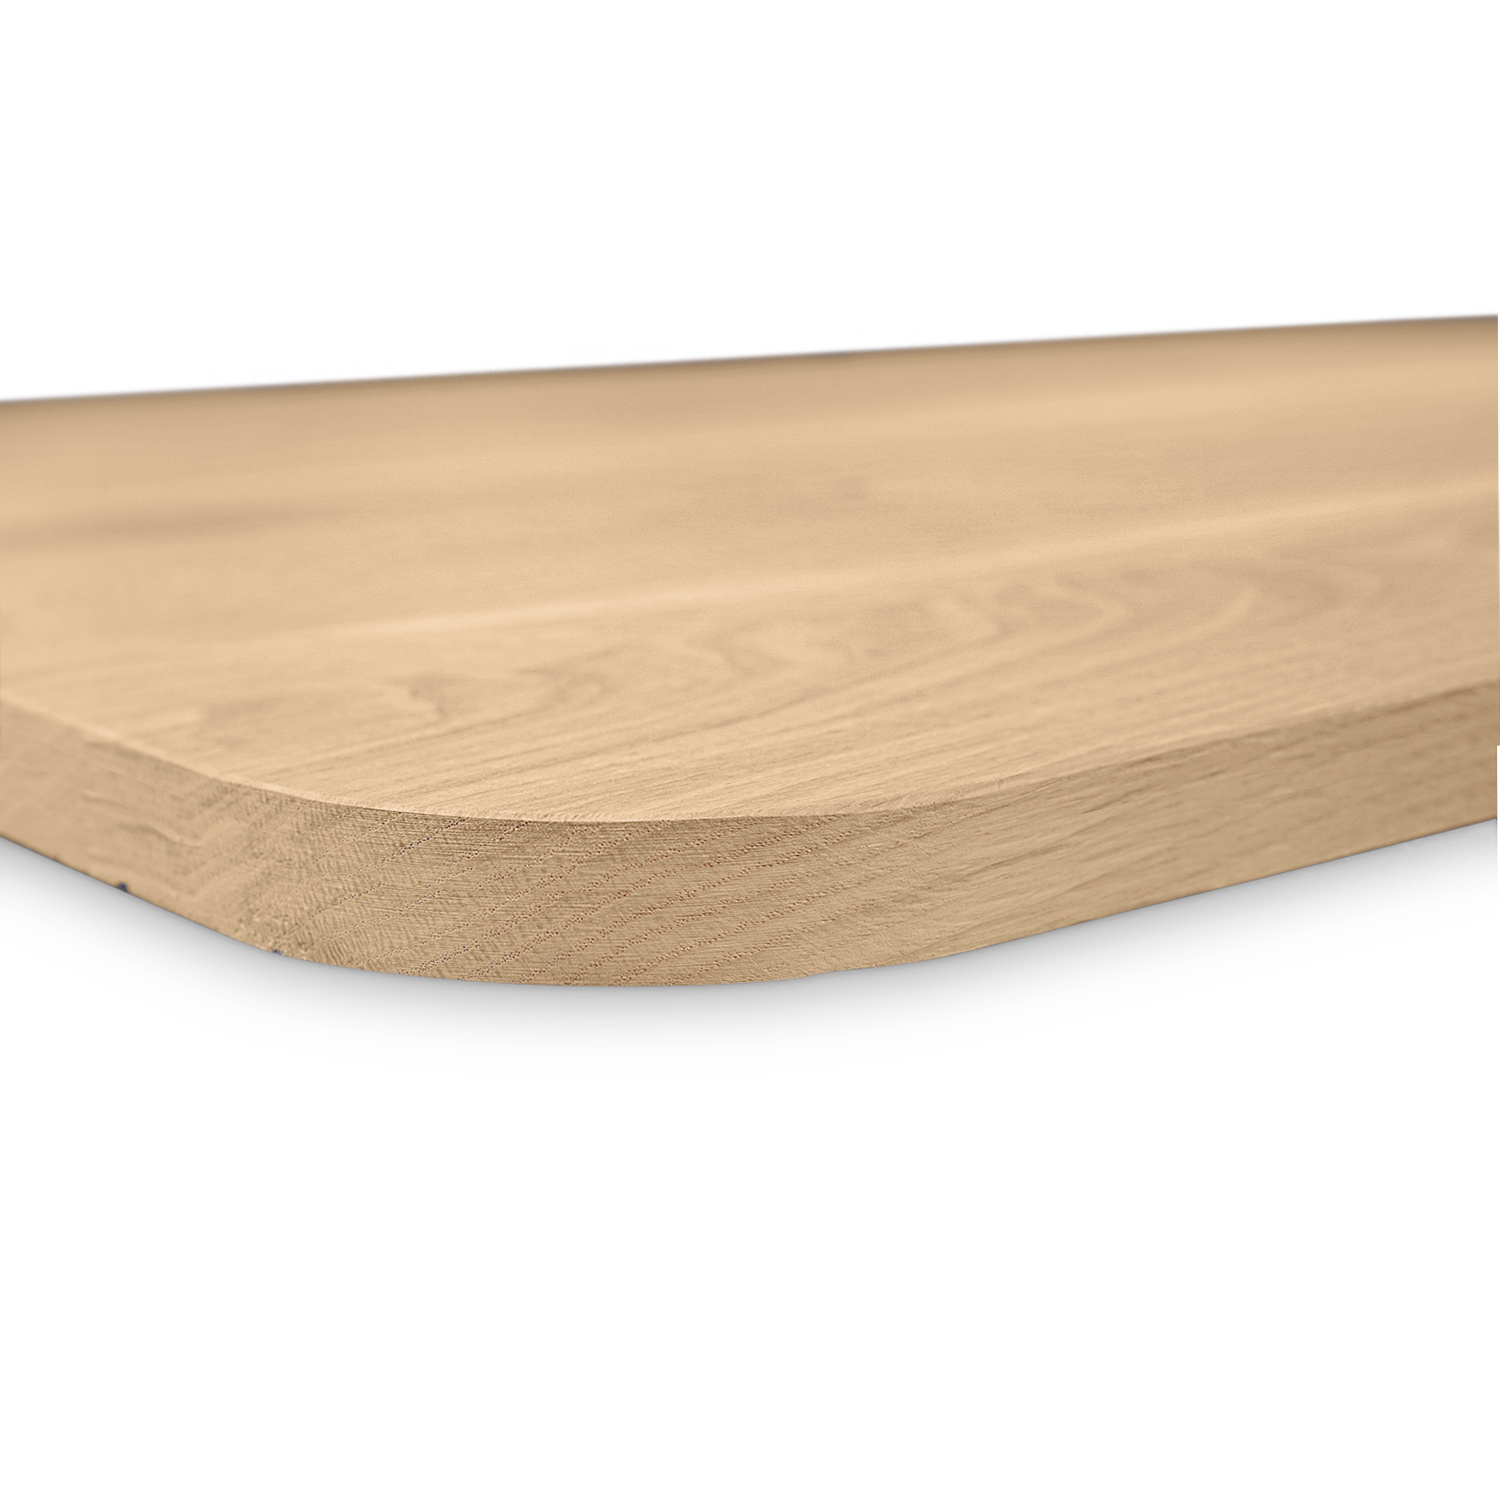  Tischplatte Wildeiche - mit runden Ecken - nach Maß - 3 cm dick (1-Schicht) - XXL Lamellen (14-20 cm breit) - Asteiche (rustikal) - verleimt & künstlich getrocknet (HF 8-12%) - mit abgerundeten Kanten - 40-117x80-250 cm